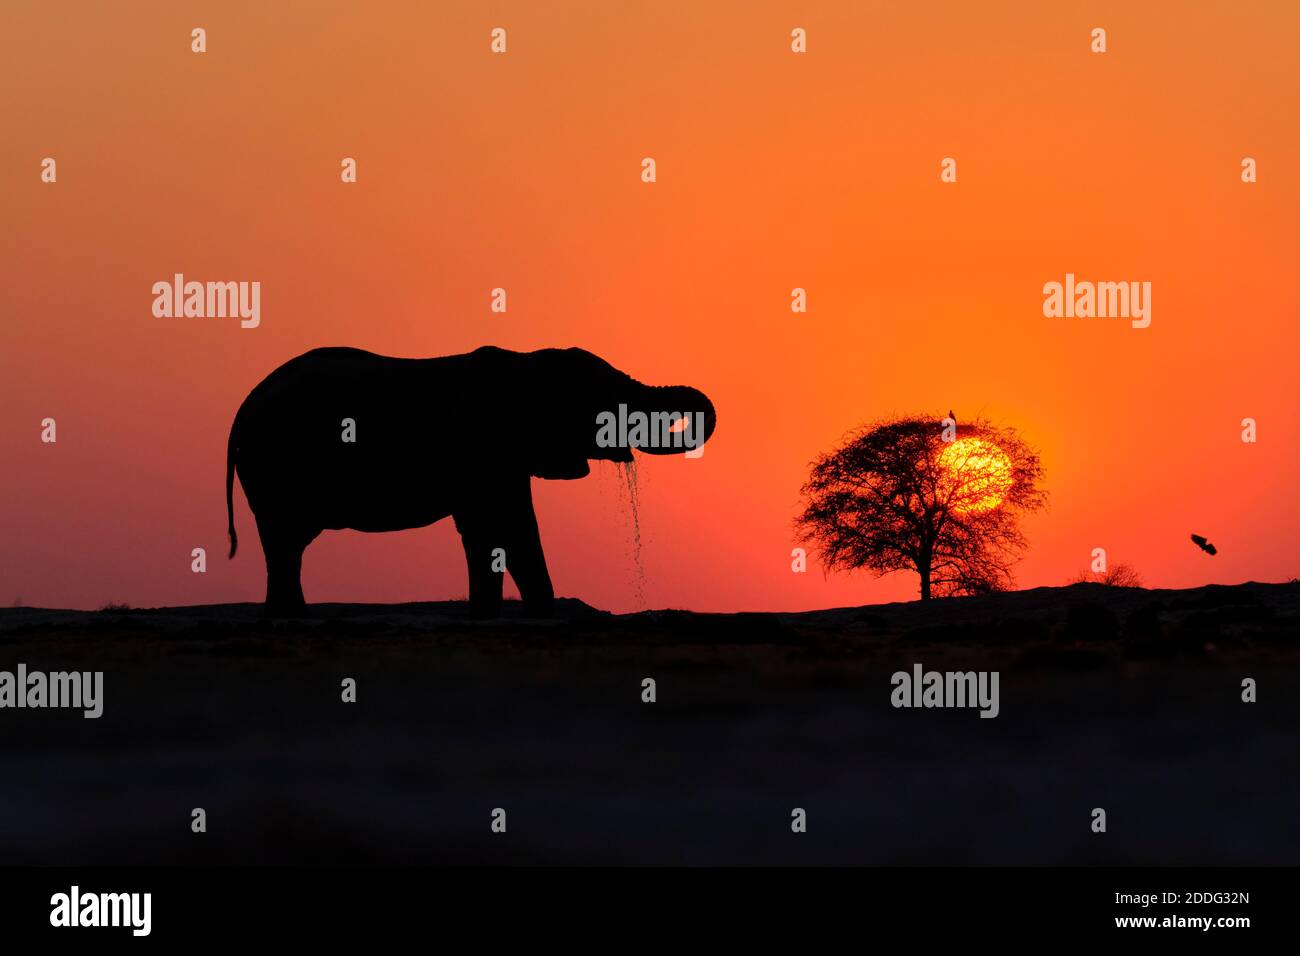 Elefante africano, Loxodonta Africana, al tramonto come silhouette, sfondo il sole e il cielo arancione. Naxi Pan, Makgadikgadi Pan, Botswana, Africa Foto Stock